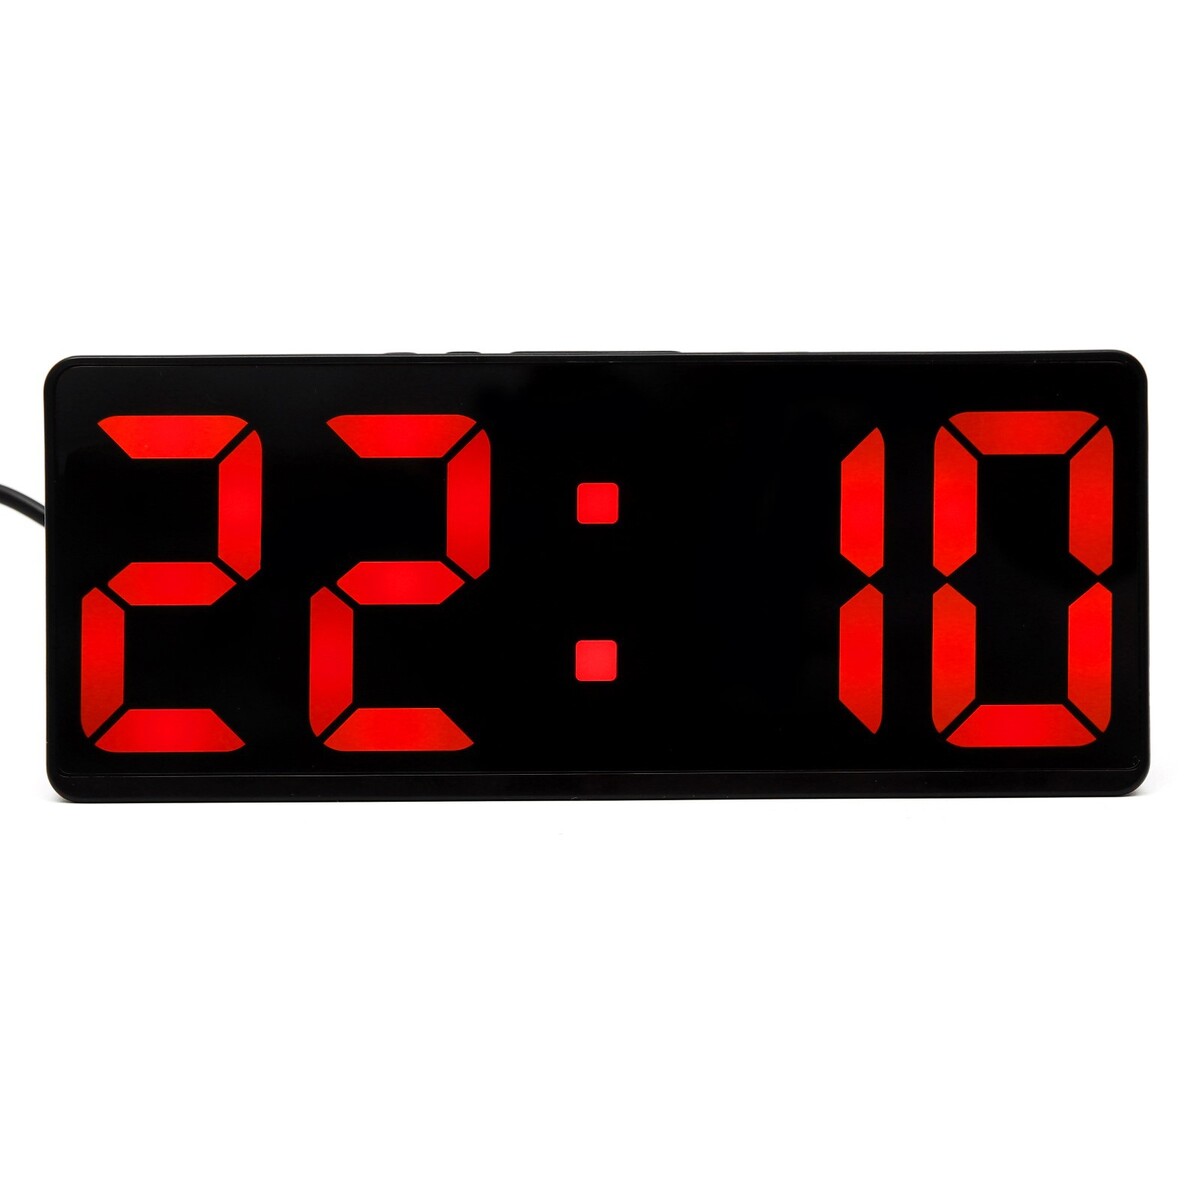 Часы - будильник электронные настольные с термометром, календарем, 15 х 6.3 см, ааа, usb часы будильник настольные